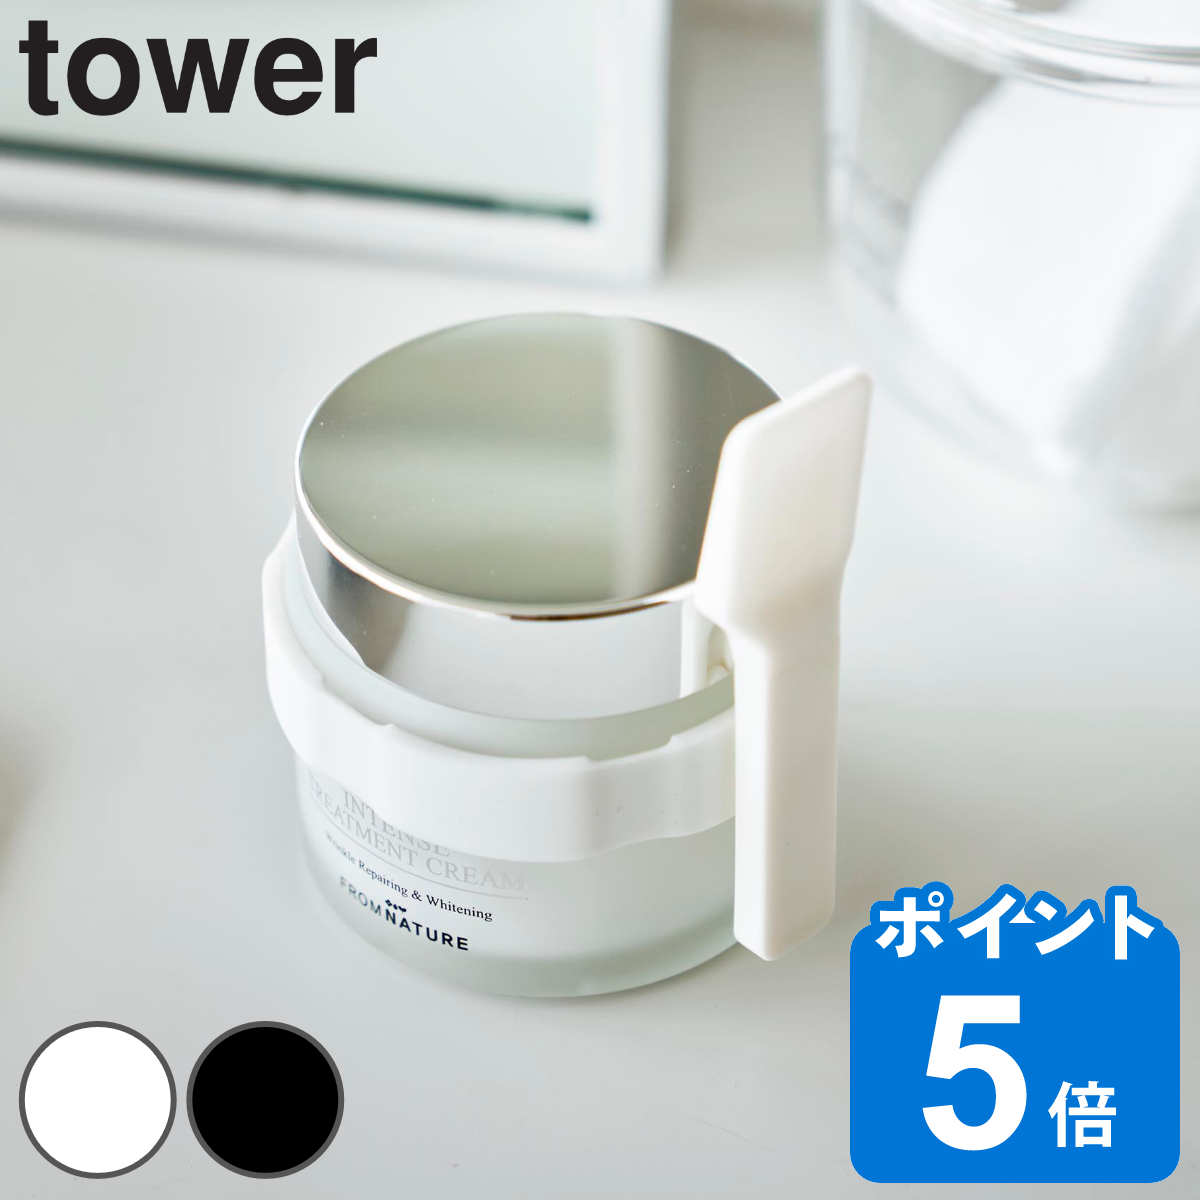 山崎実業 tower 収納バンド付き美容クリームスパチュラ タワー